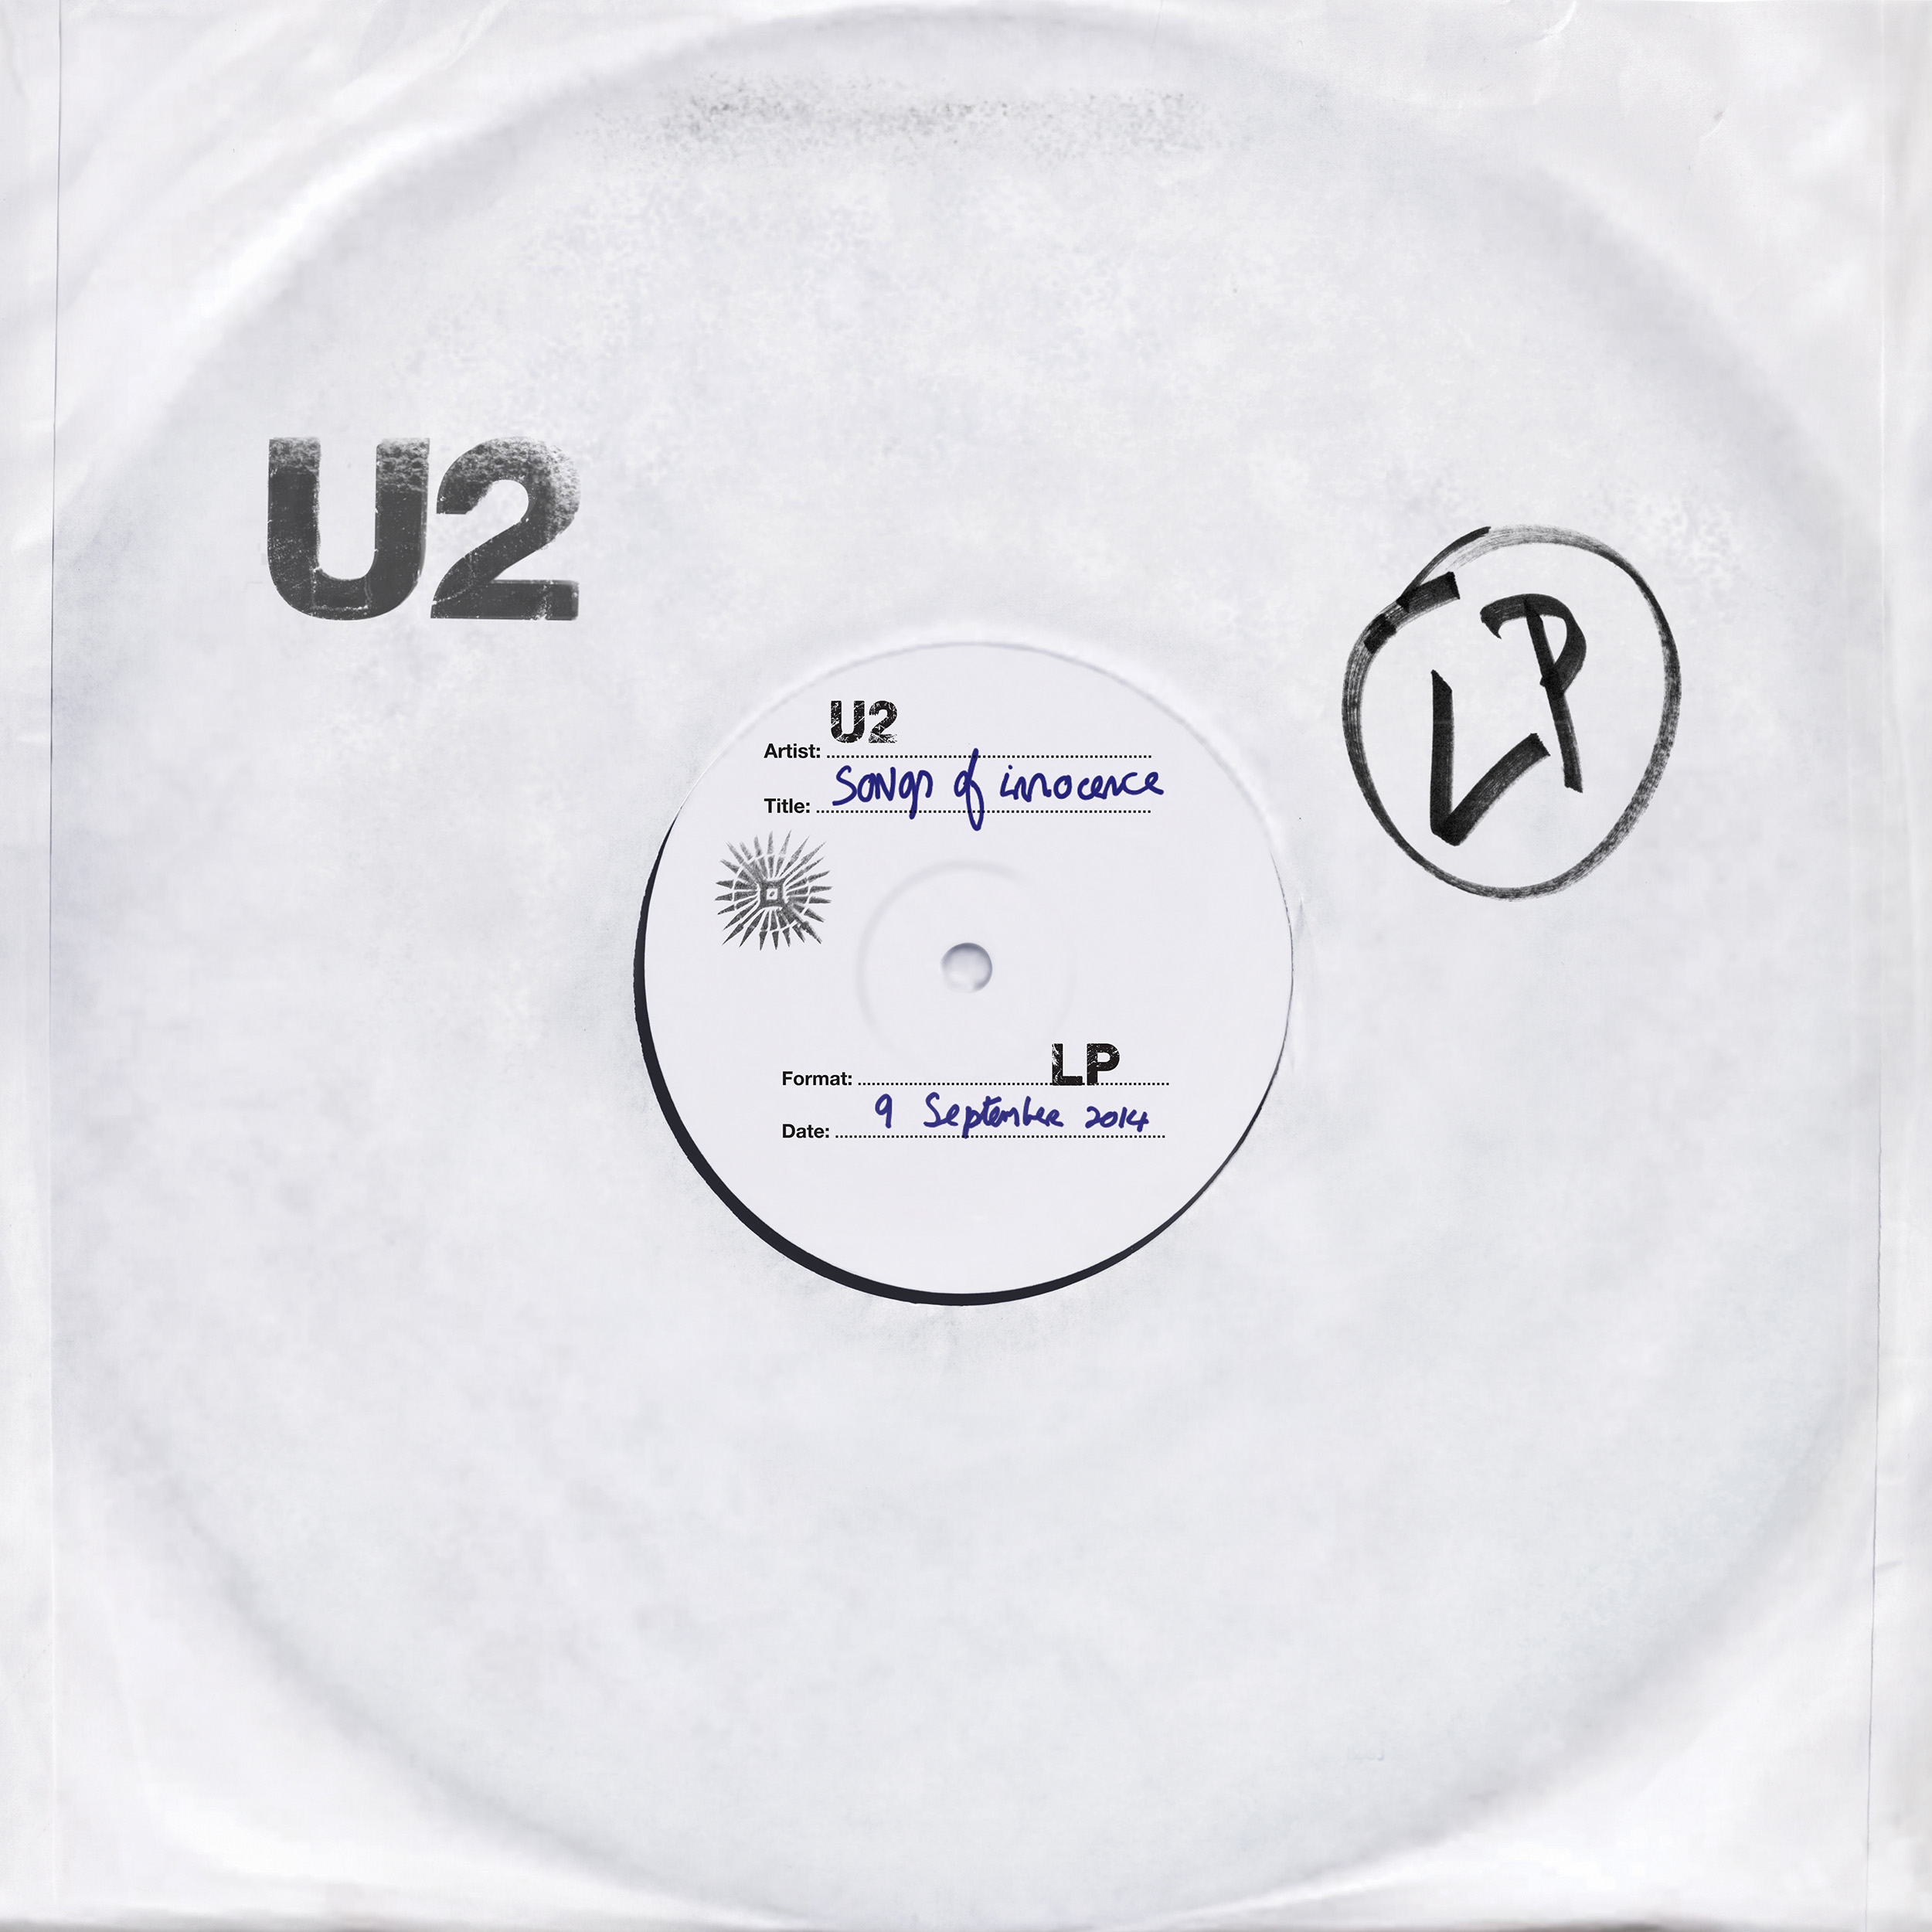 U2's Songs Of Innocence